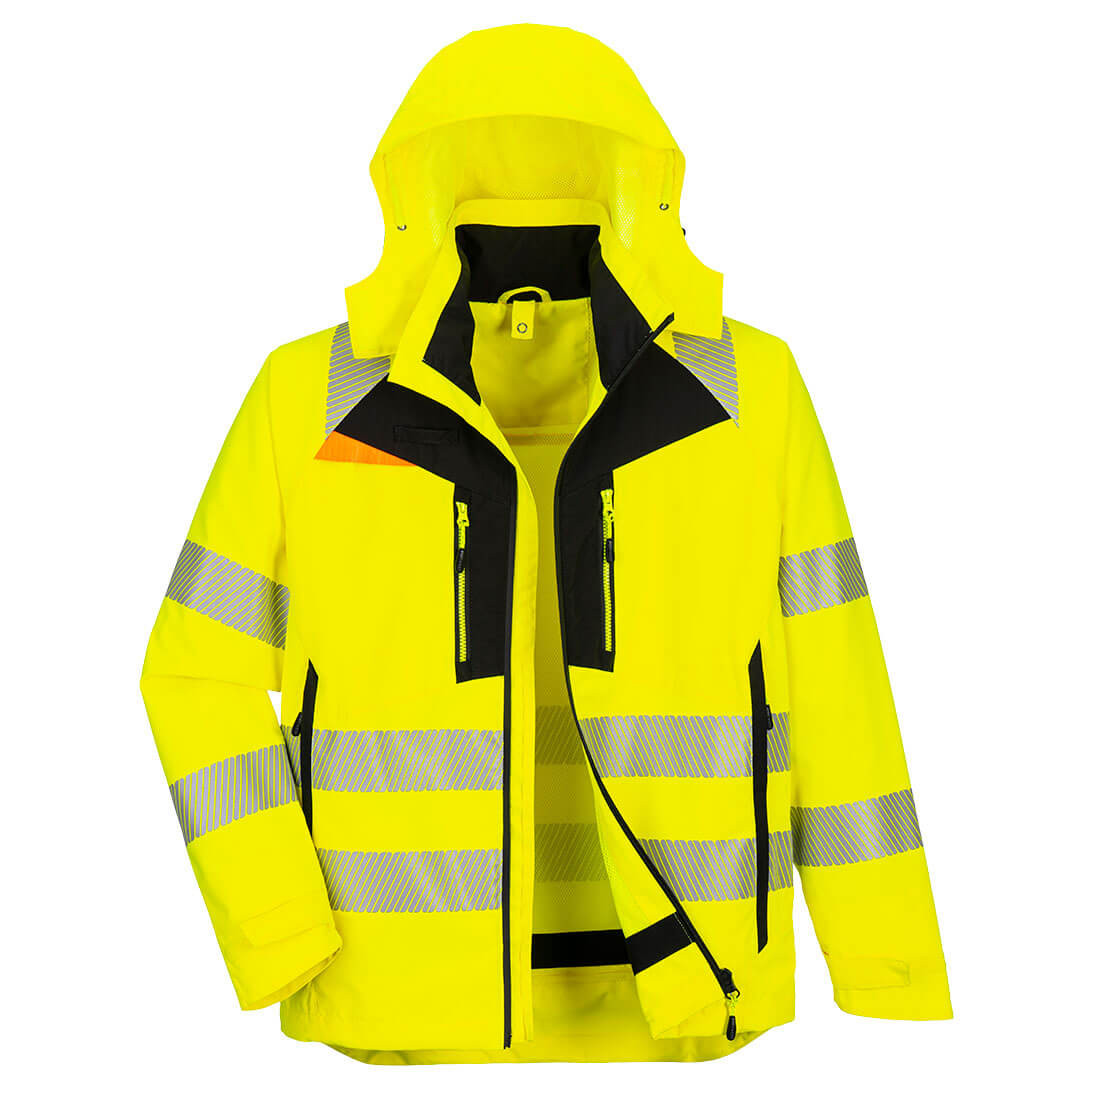 DX4 Hi-Vis 4-in-1 Jacket - Safetywear